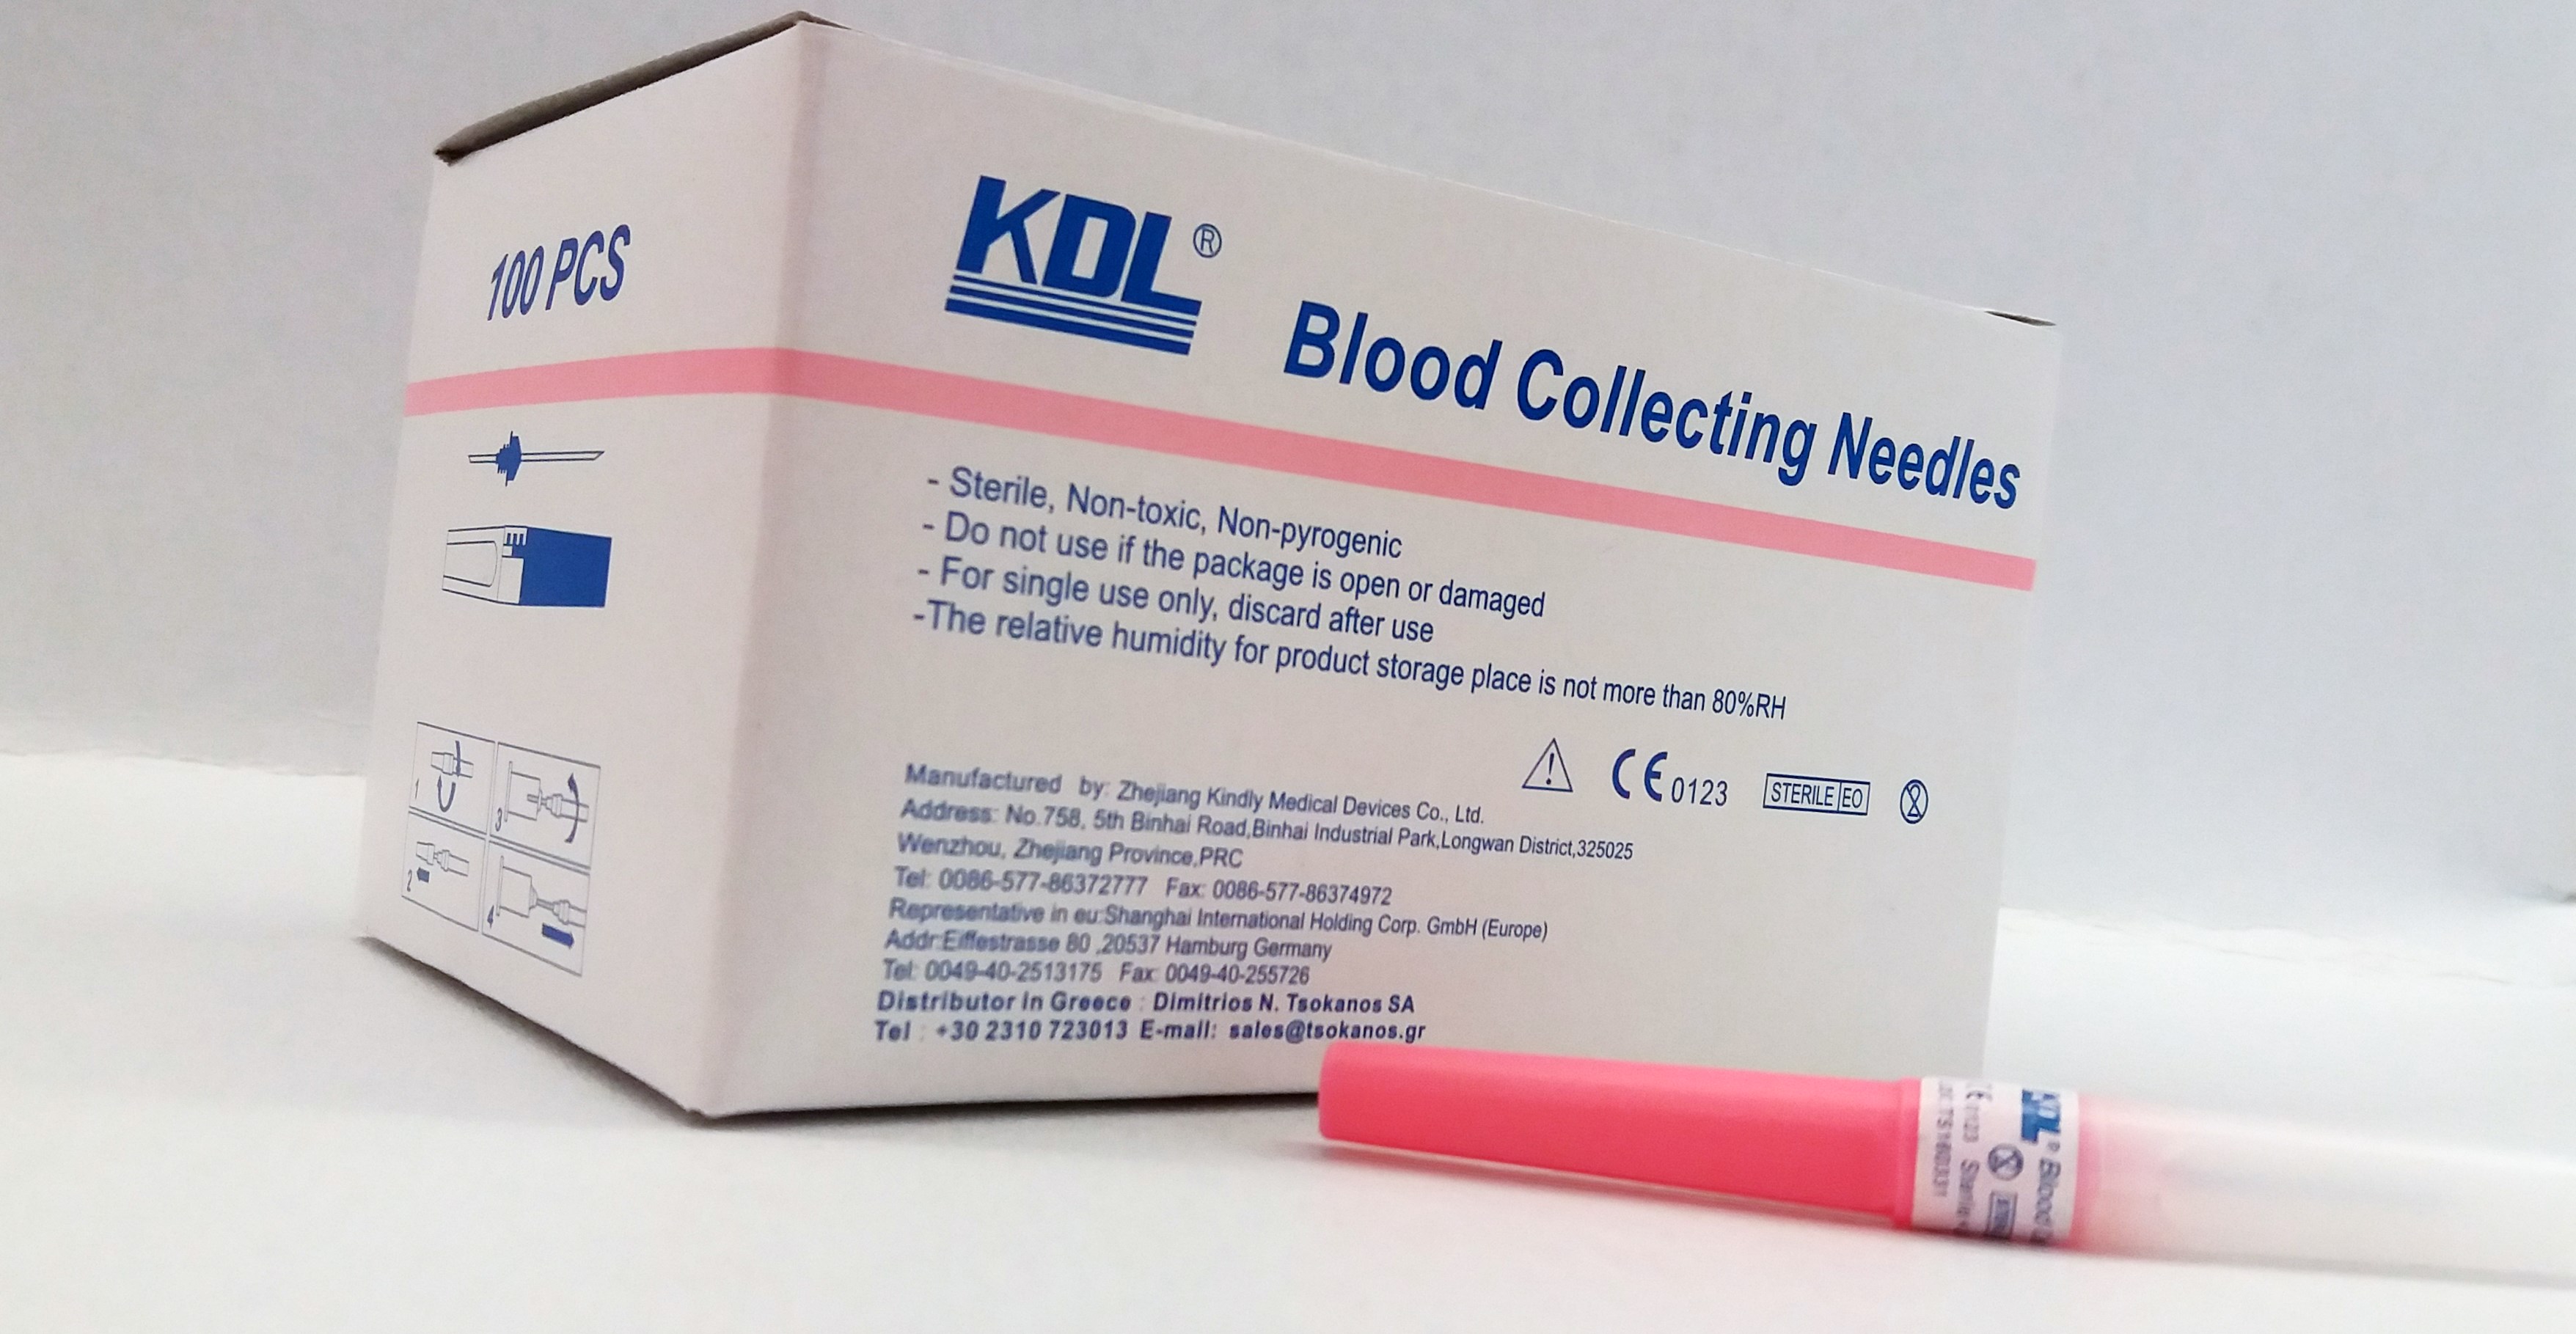 Βελόνες αιμοληψίας KDL 18G x 1 1/2"